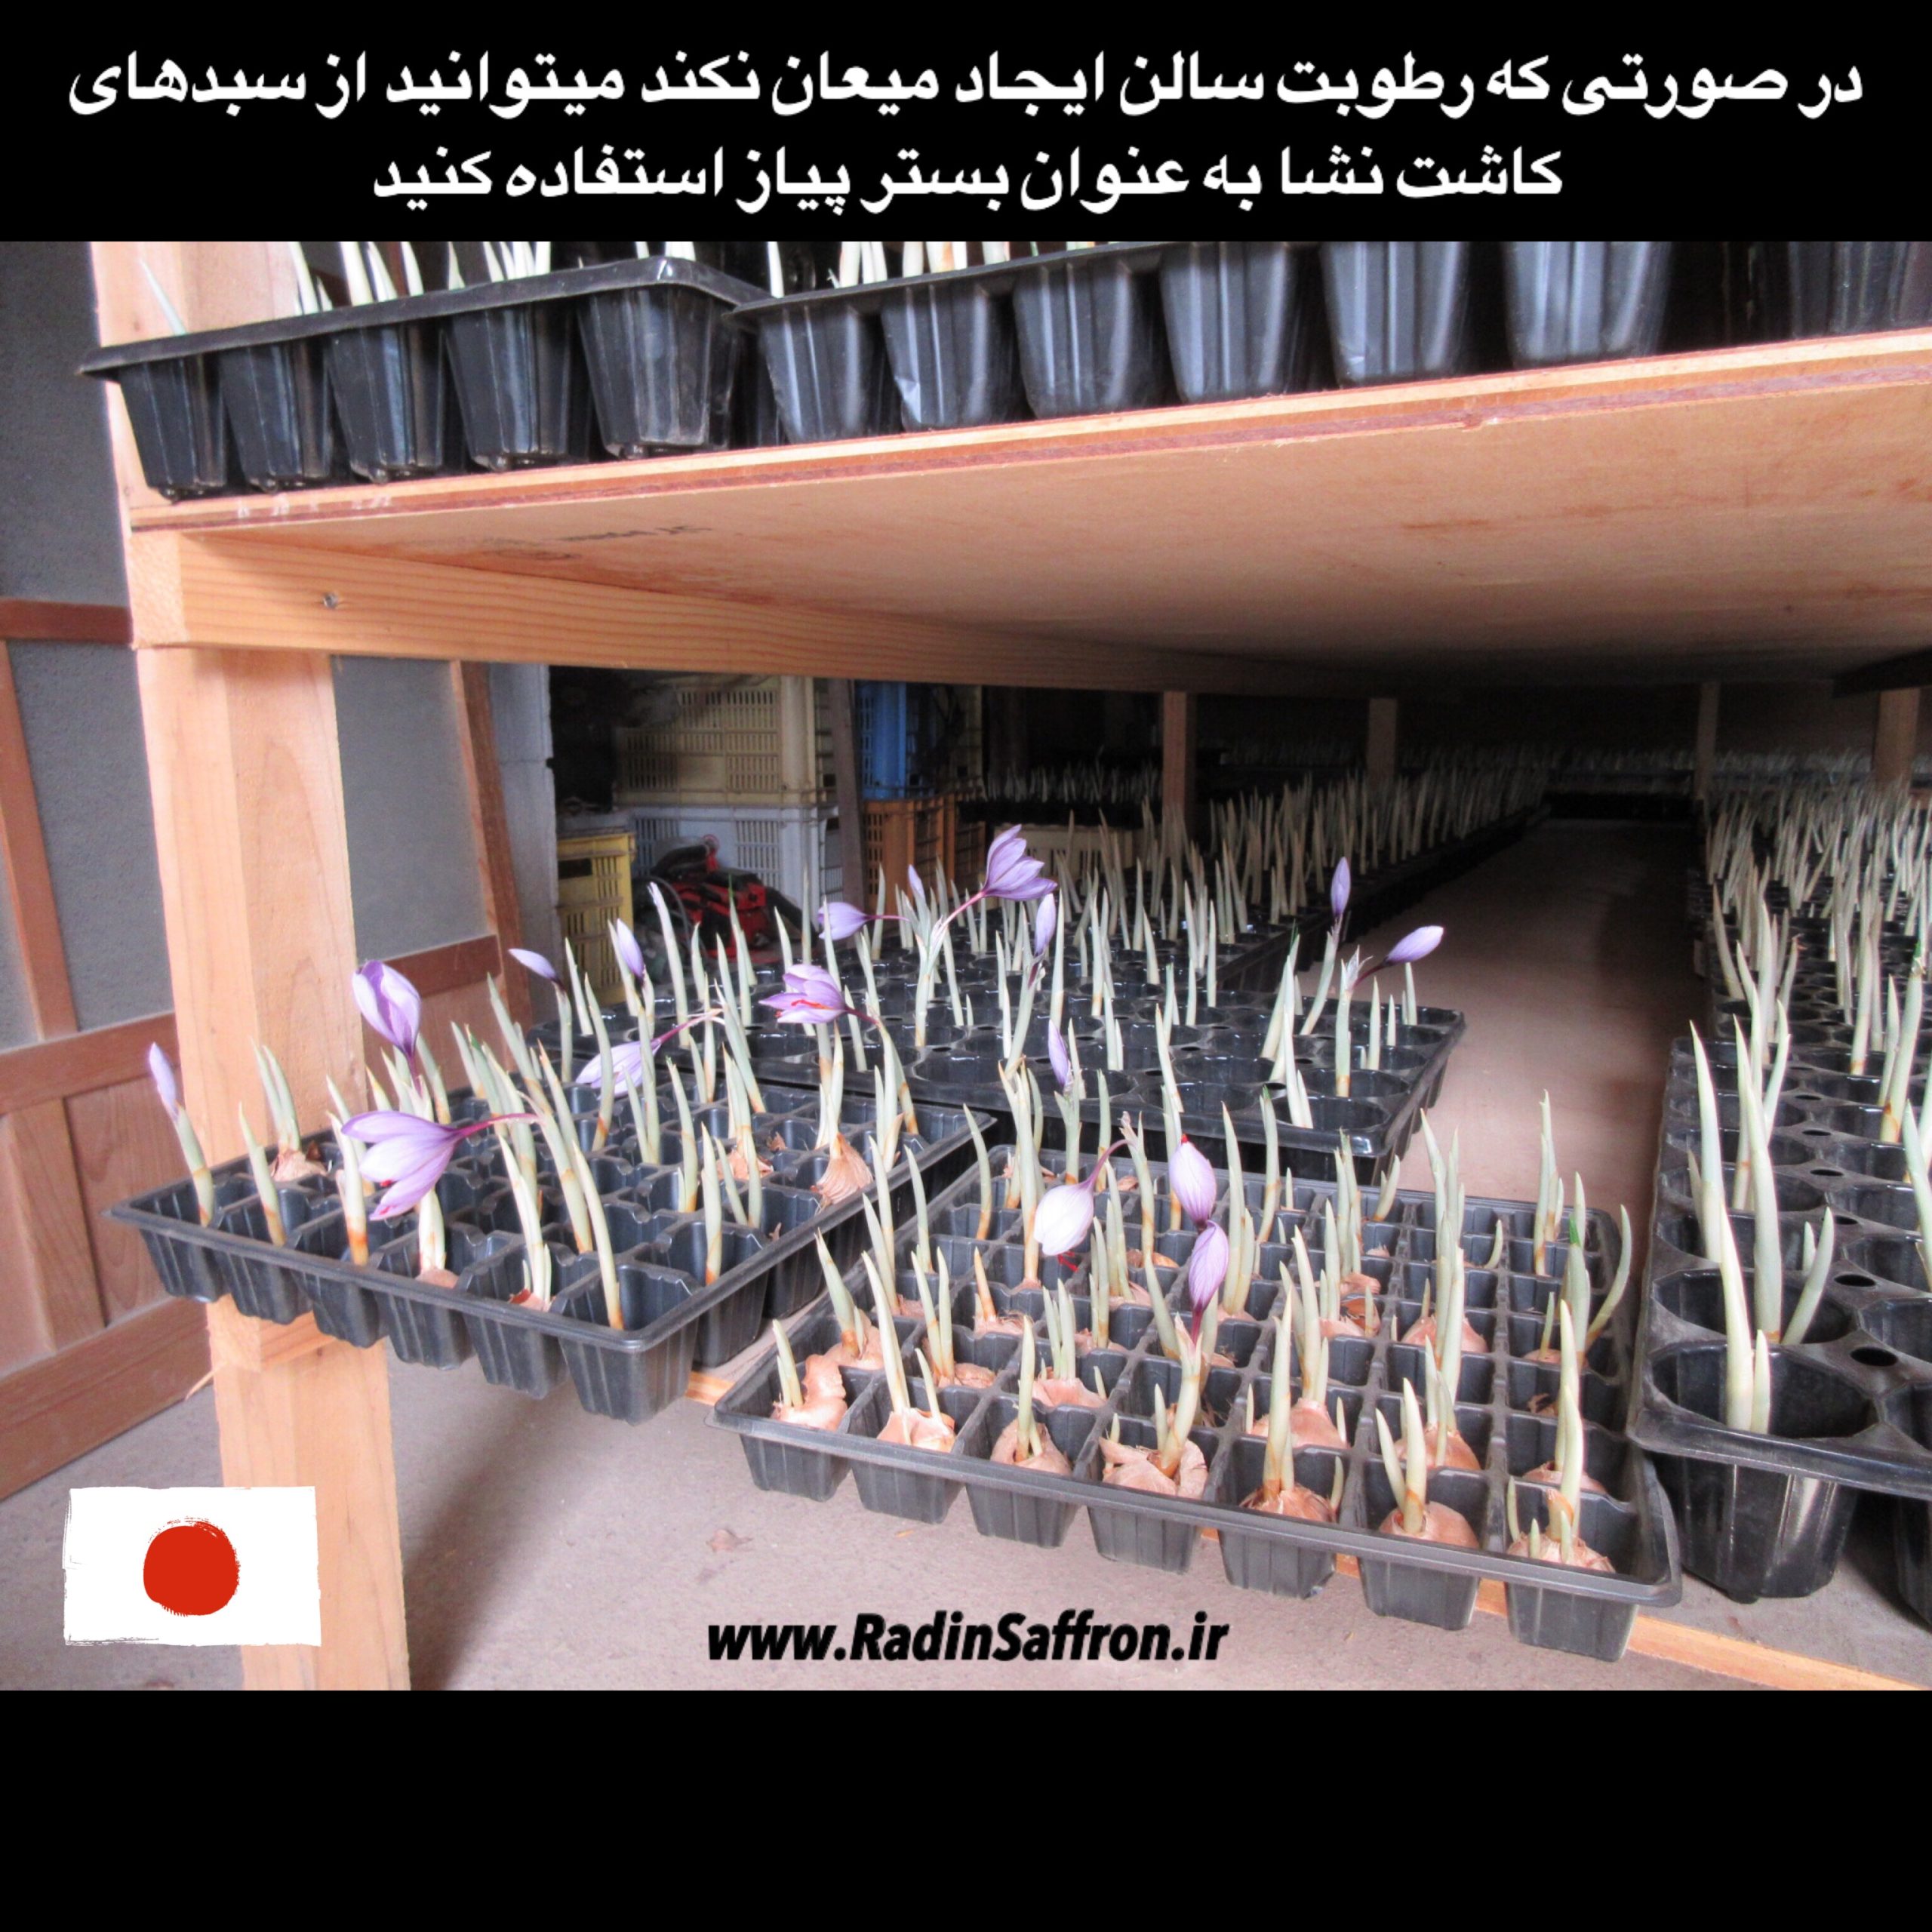 داخل گلخانه زعفران در کشور ژاپن